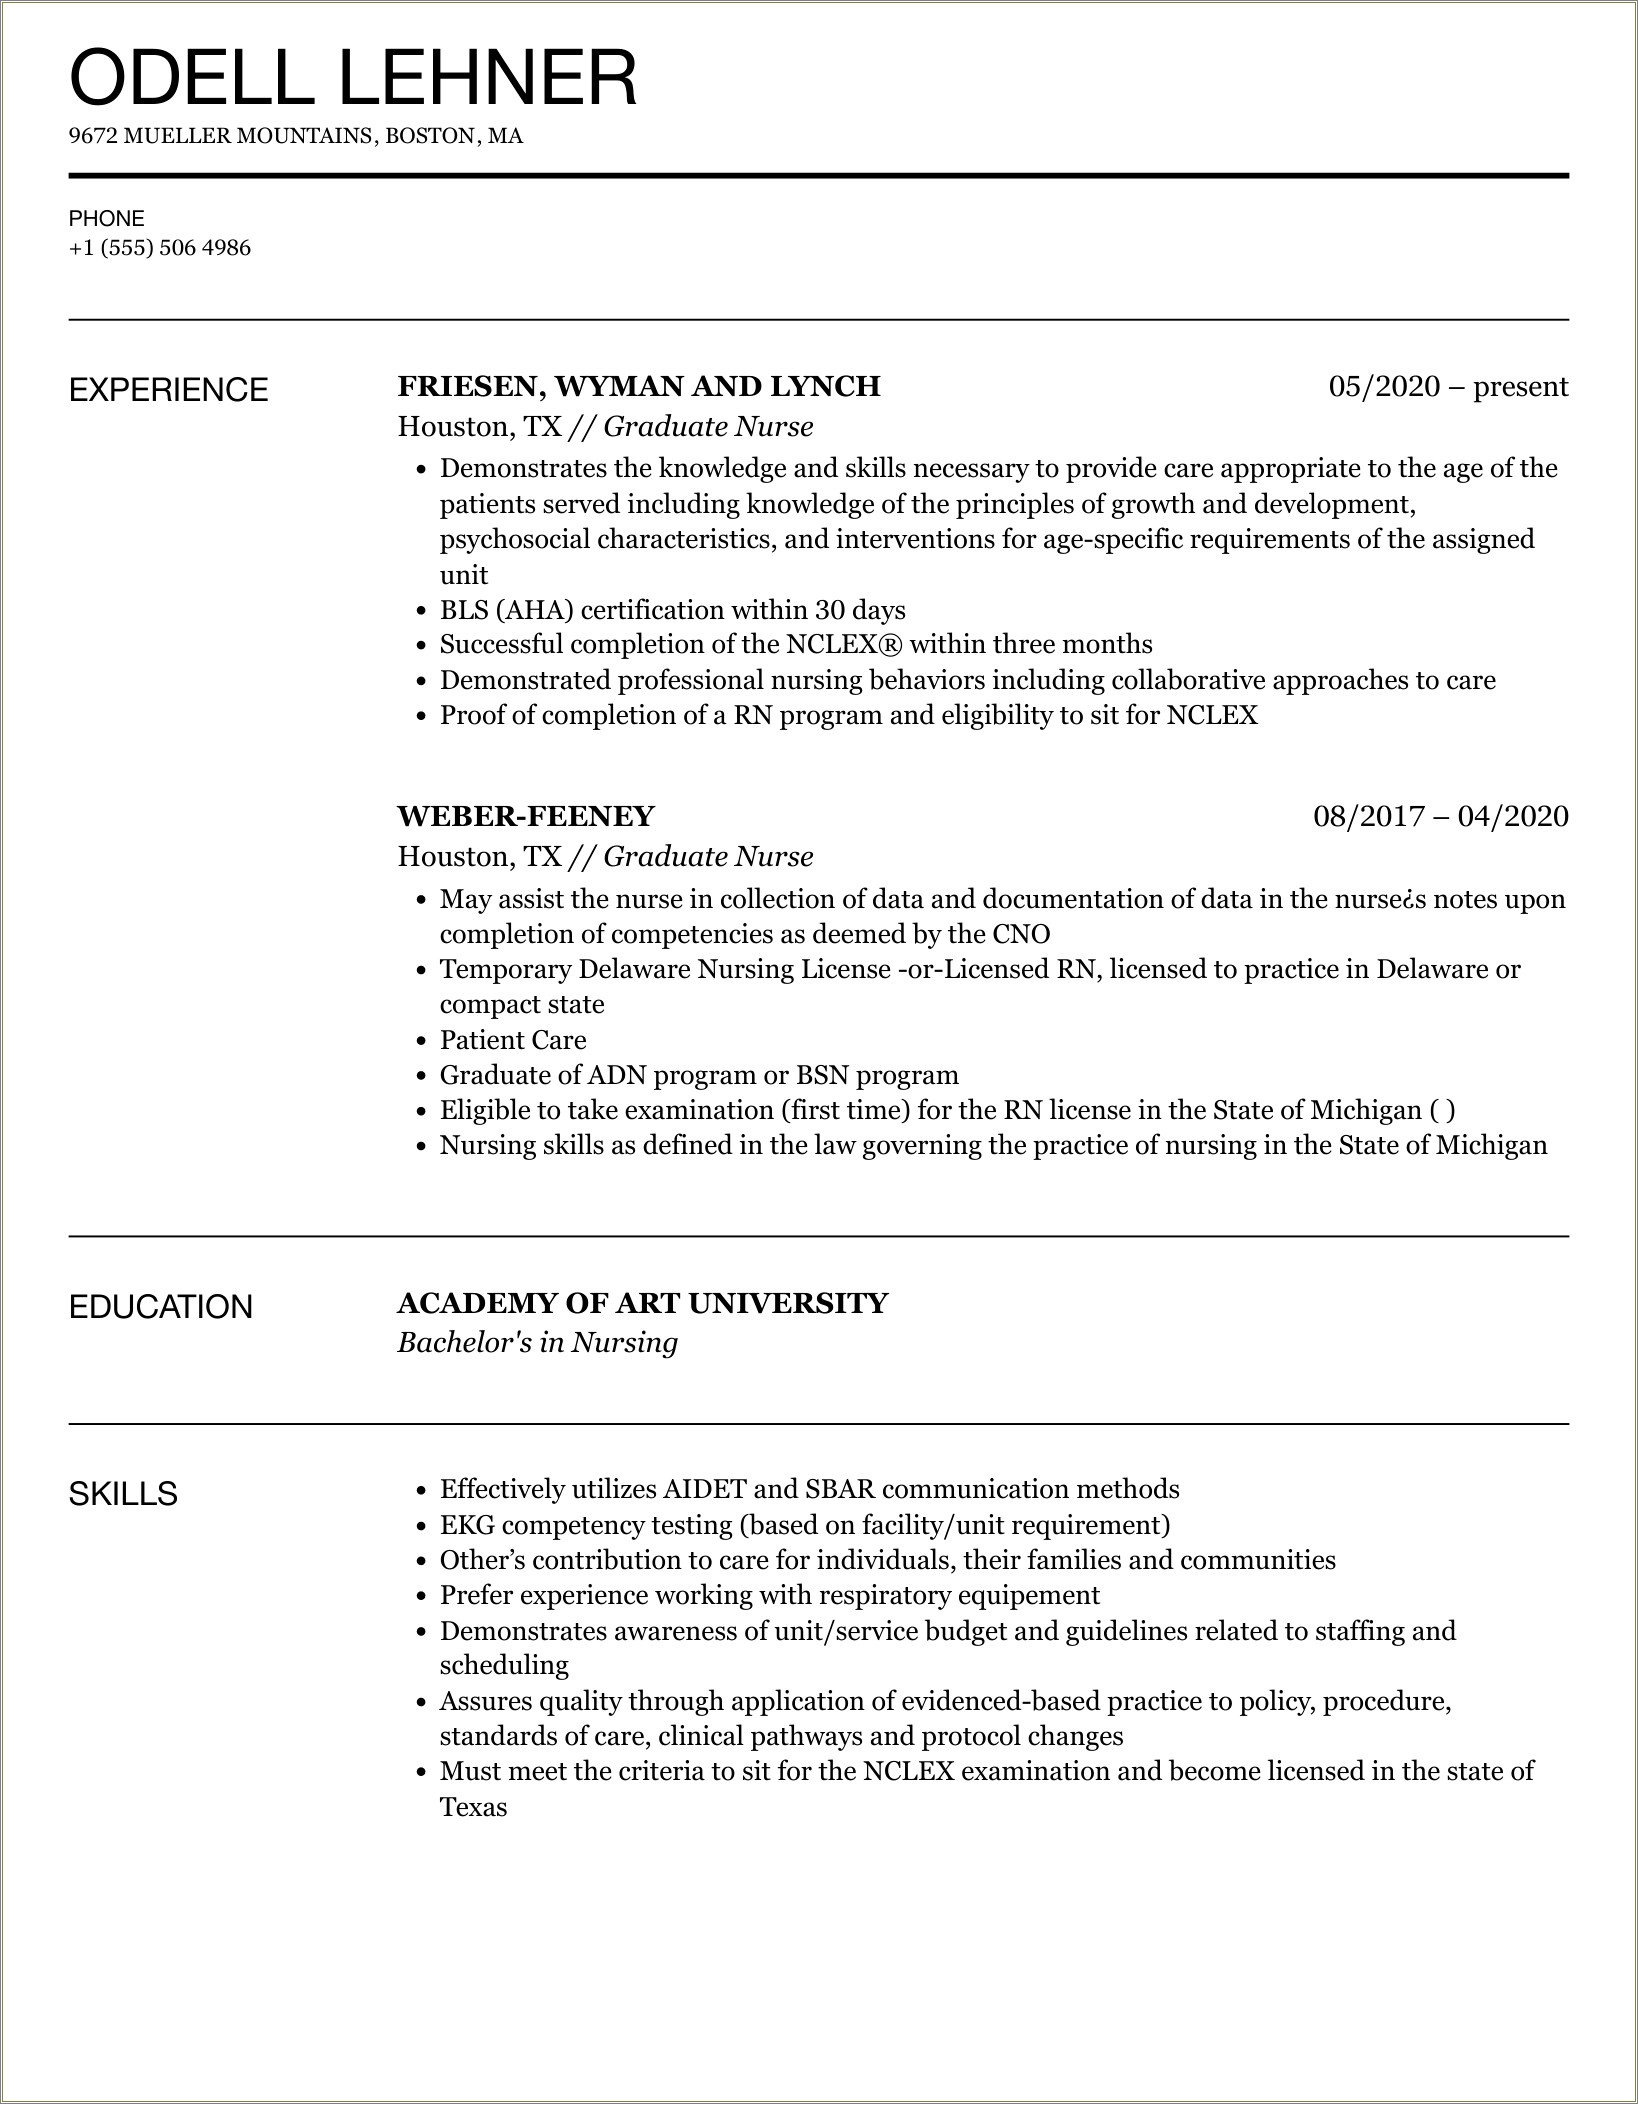 Newly Graduate Registered Nurse Summary Resume